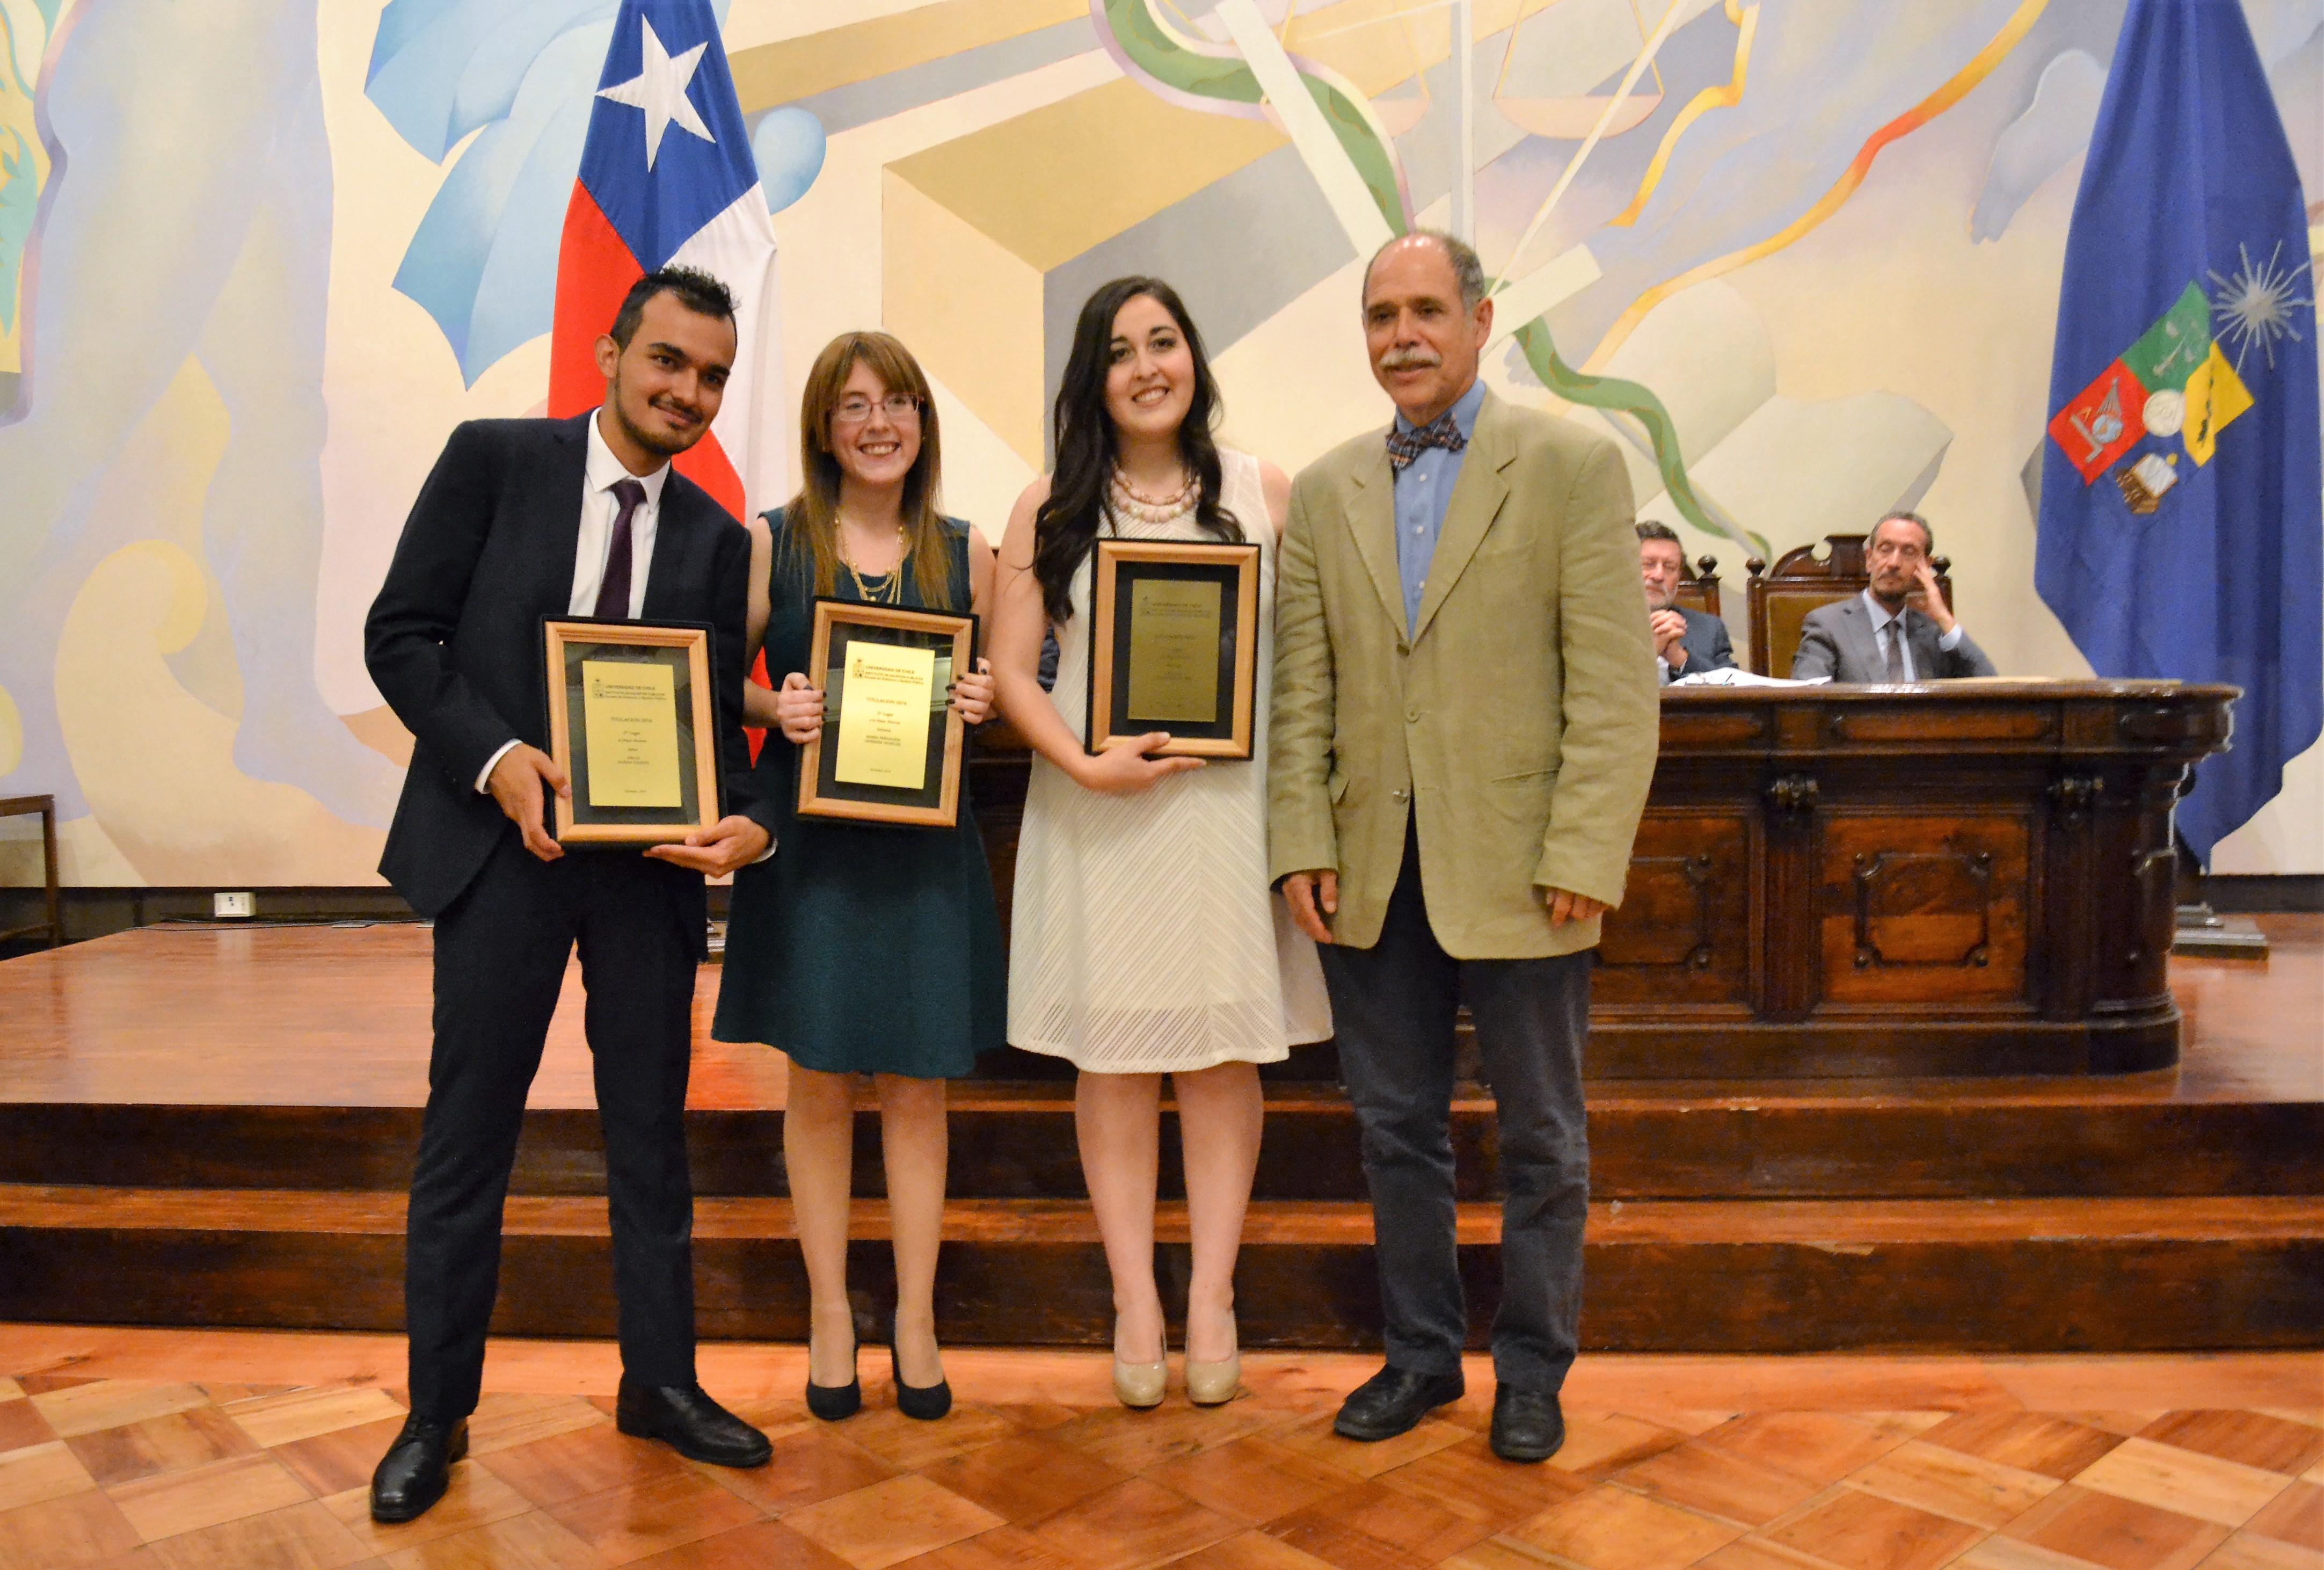 Los estudiantes Diego Durán (segundo lugar), María Fernanda Herrera (tercer lugar) y Patricia Contreras (primer lugar) junto al Vicerrector Juan Cortés.